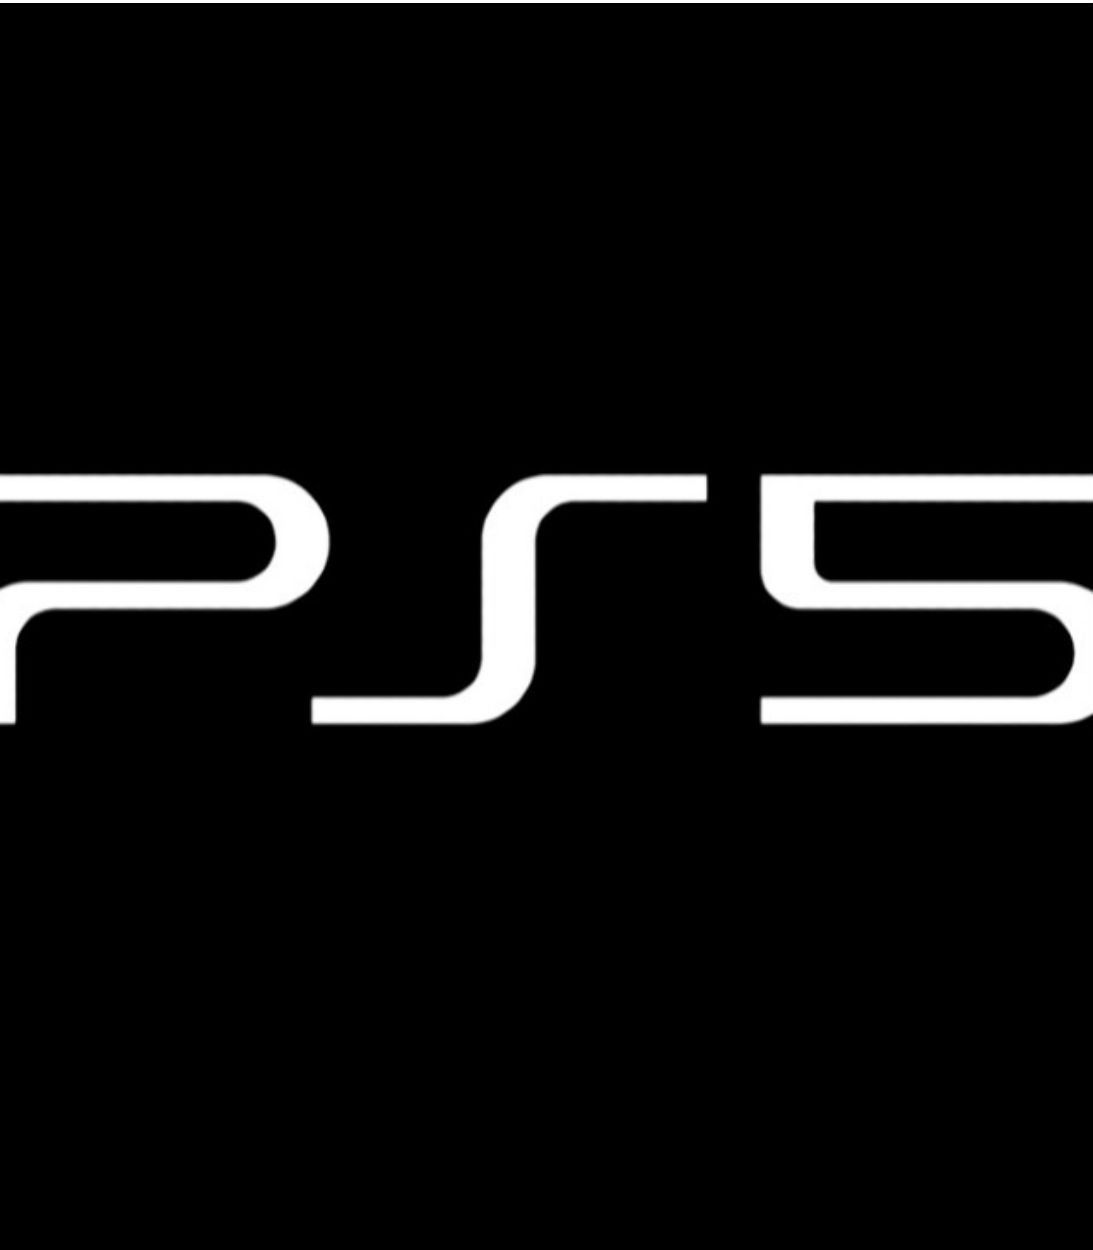 PS5 Vertical